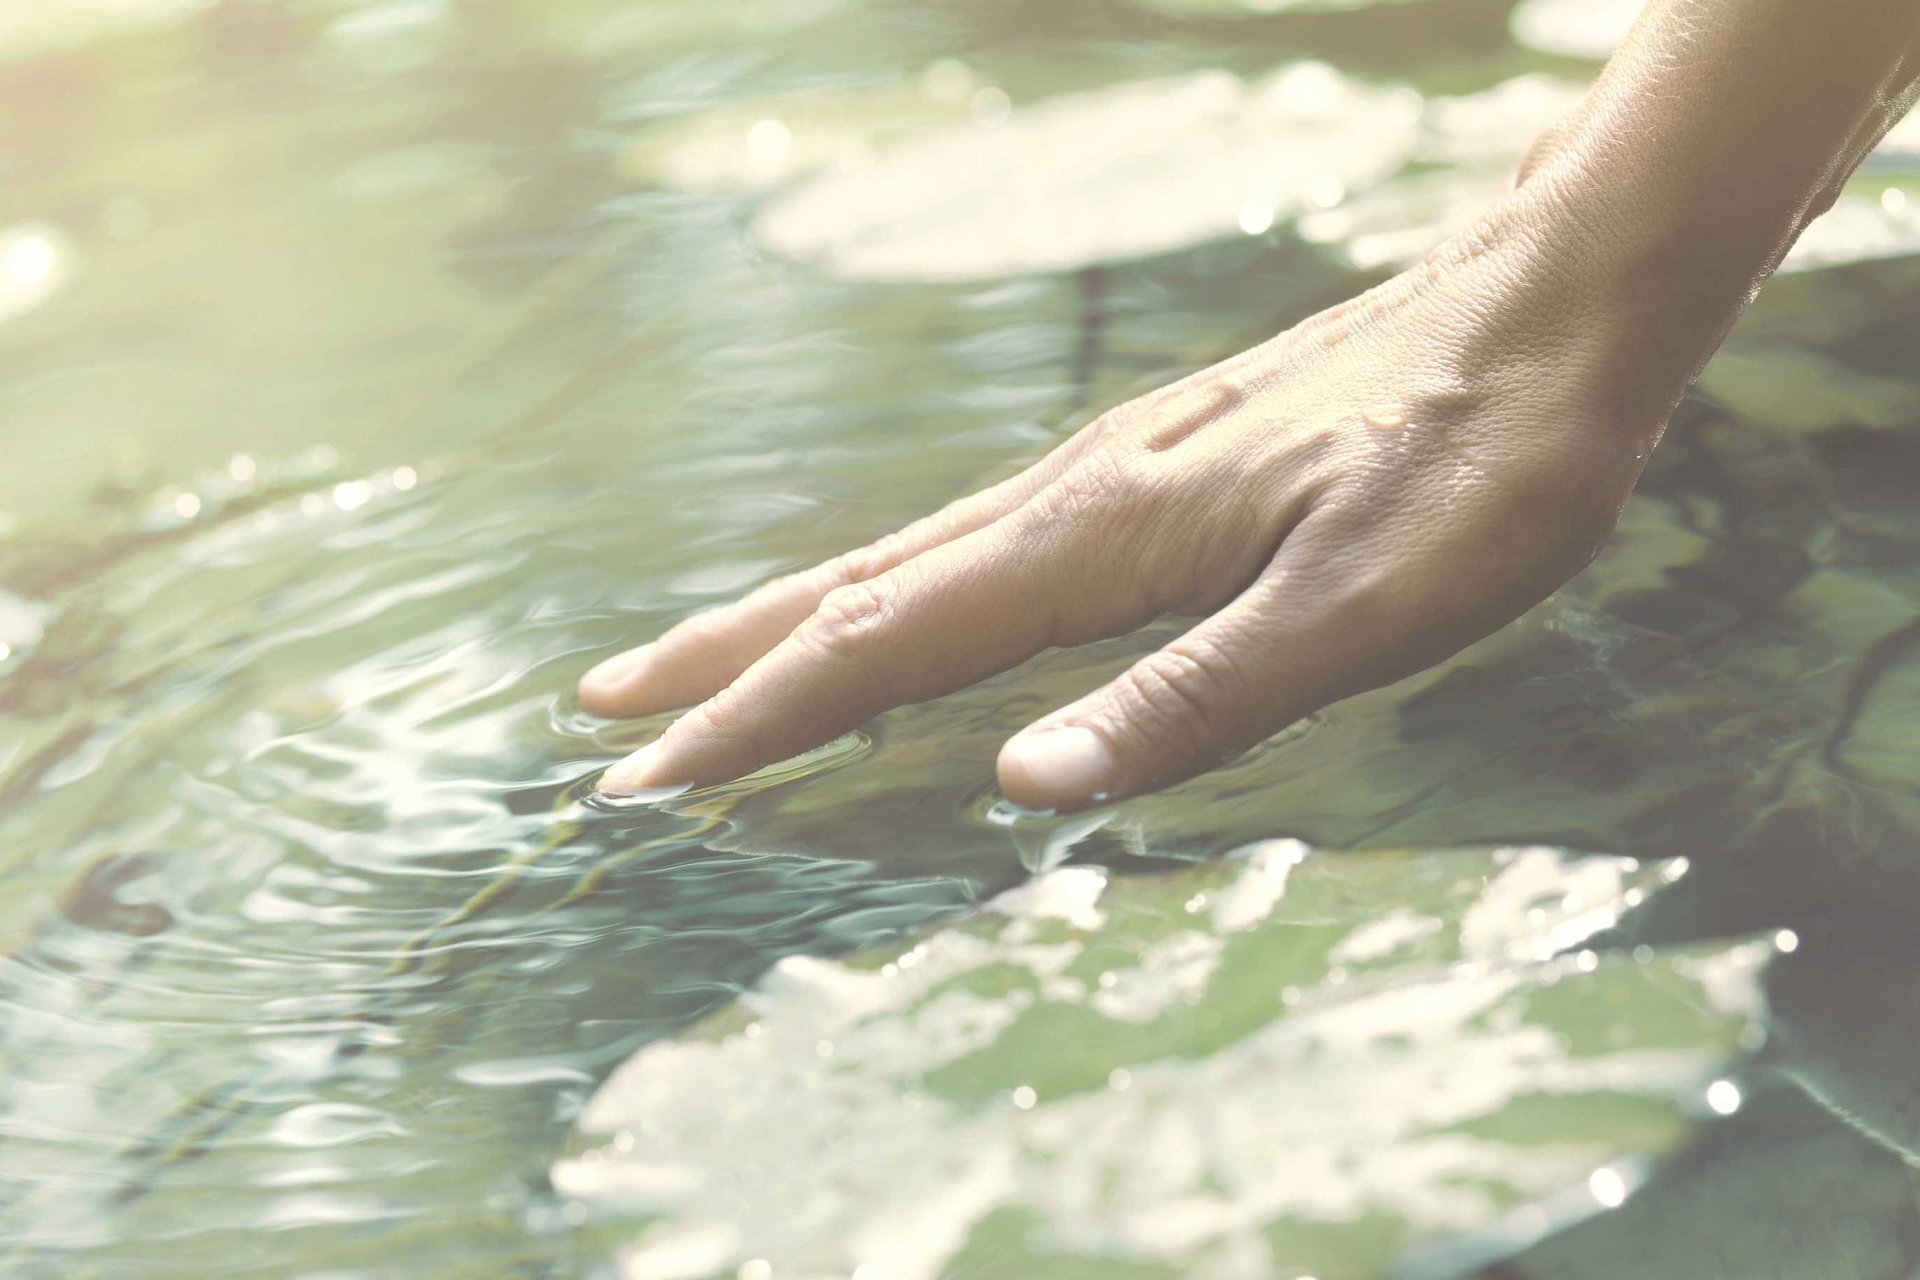 Eine Hand berührt oberflächlich das Wasser.